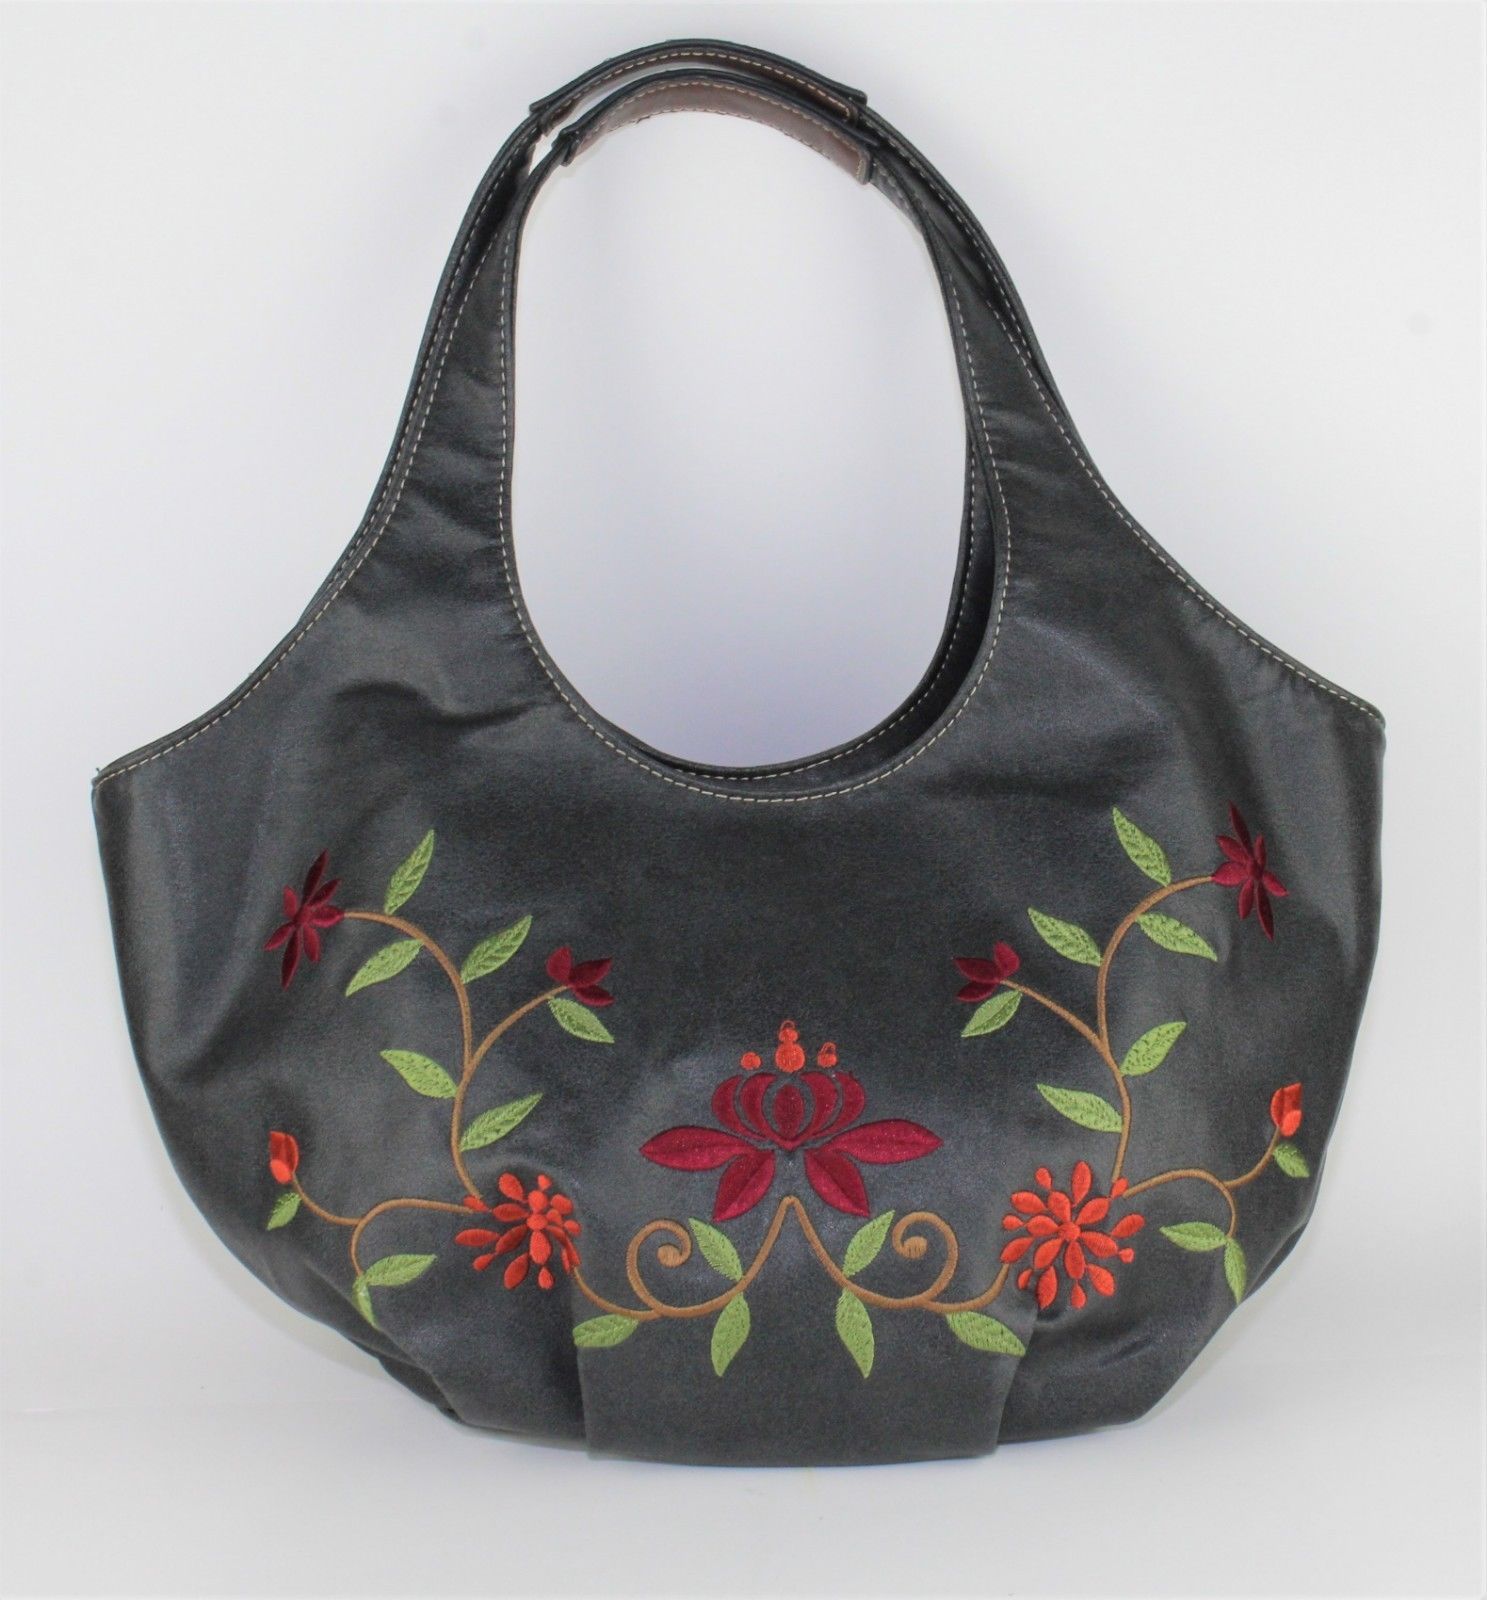 Primary image for Womens Nine West Black Embroidered Orange Burgundy Red Floral Handbag Purse